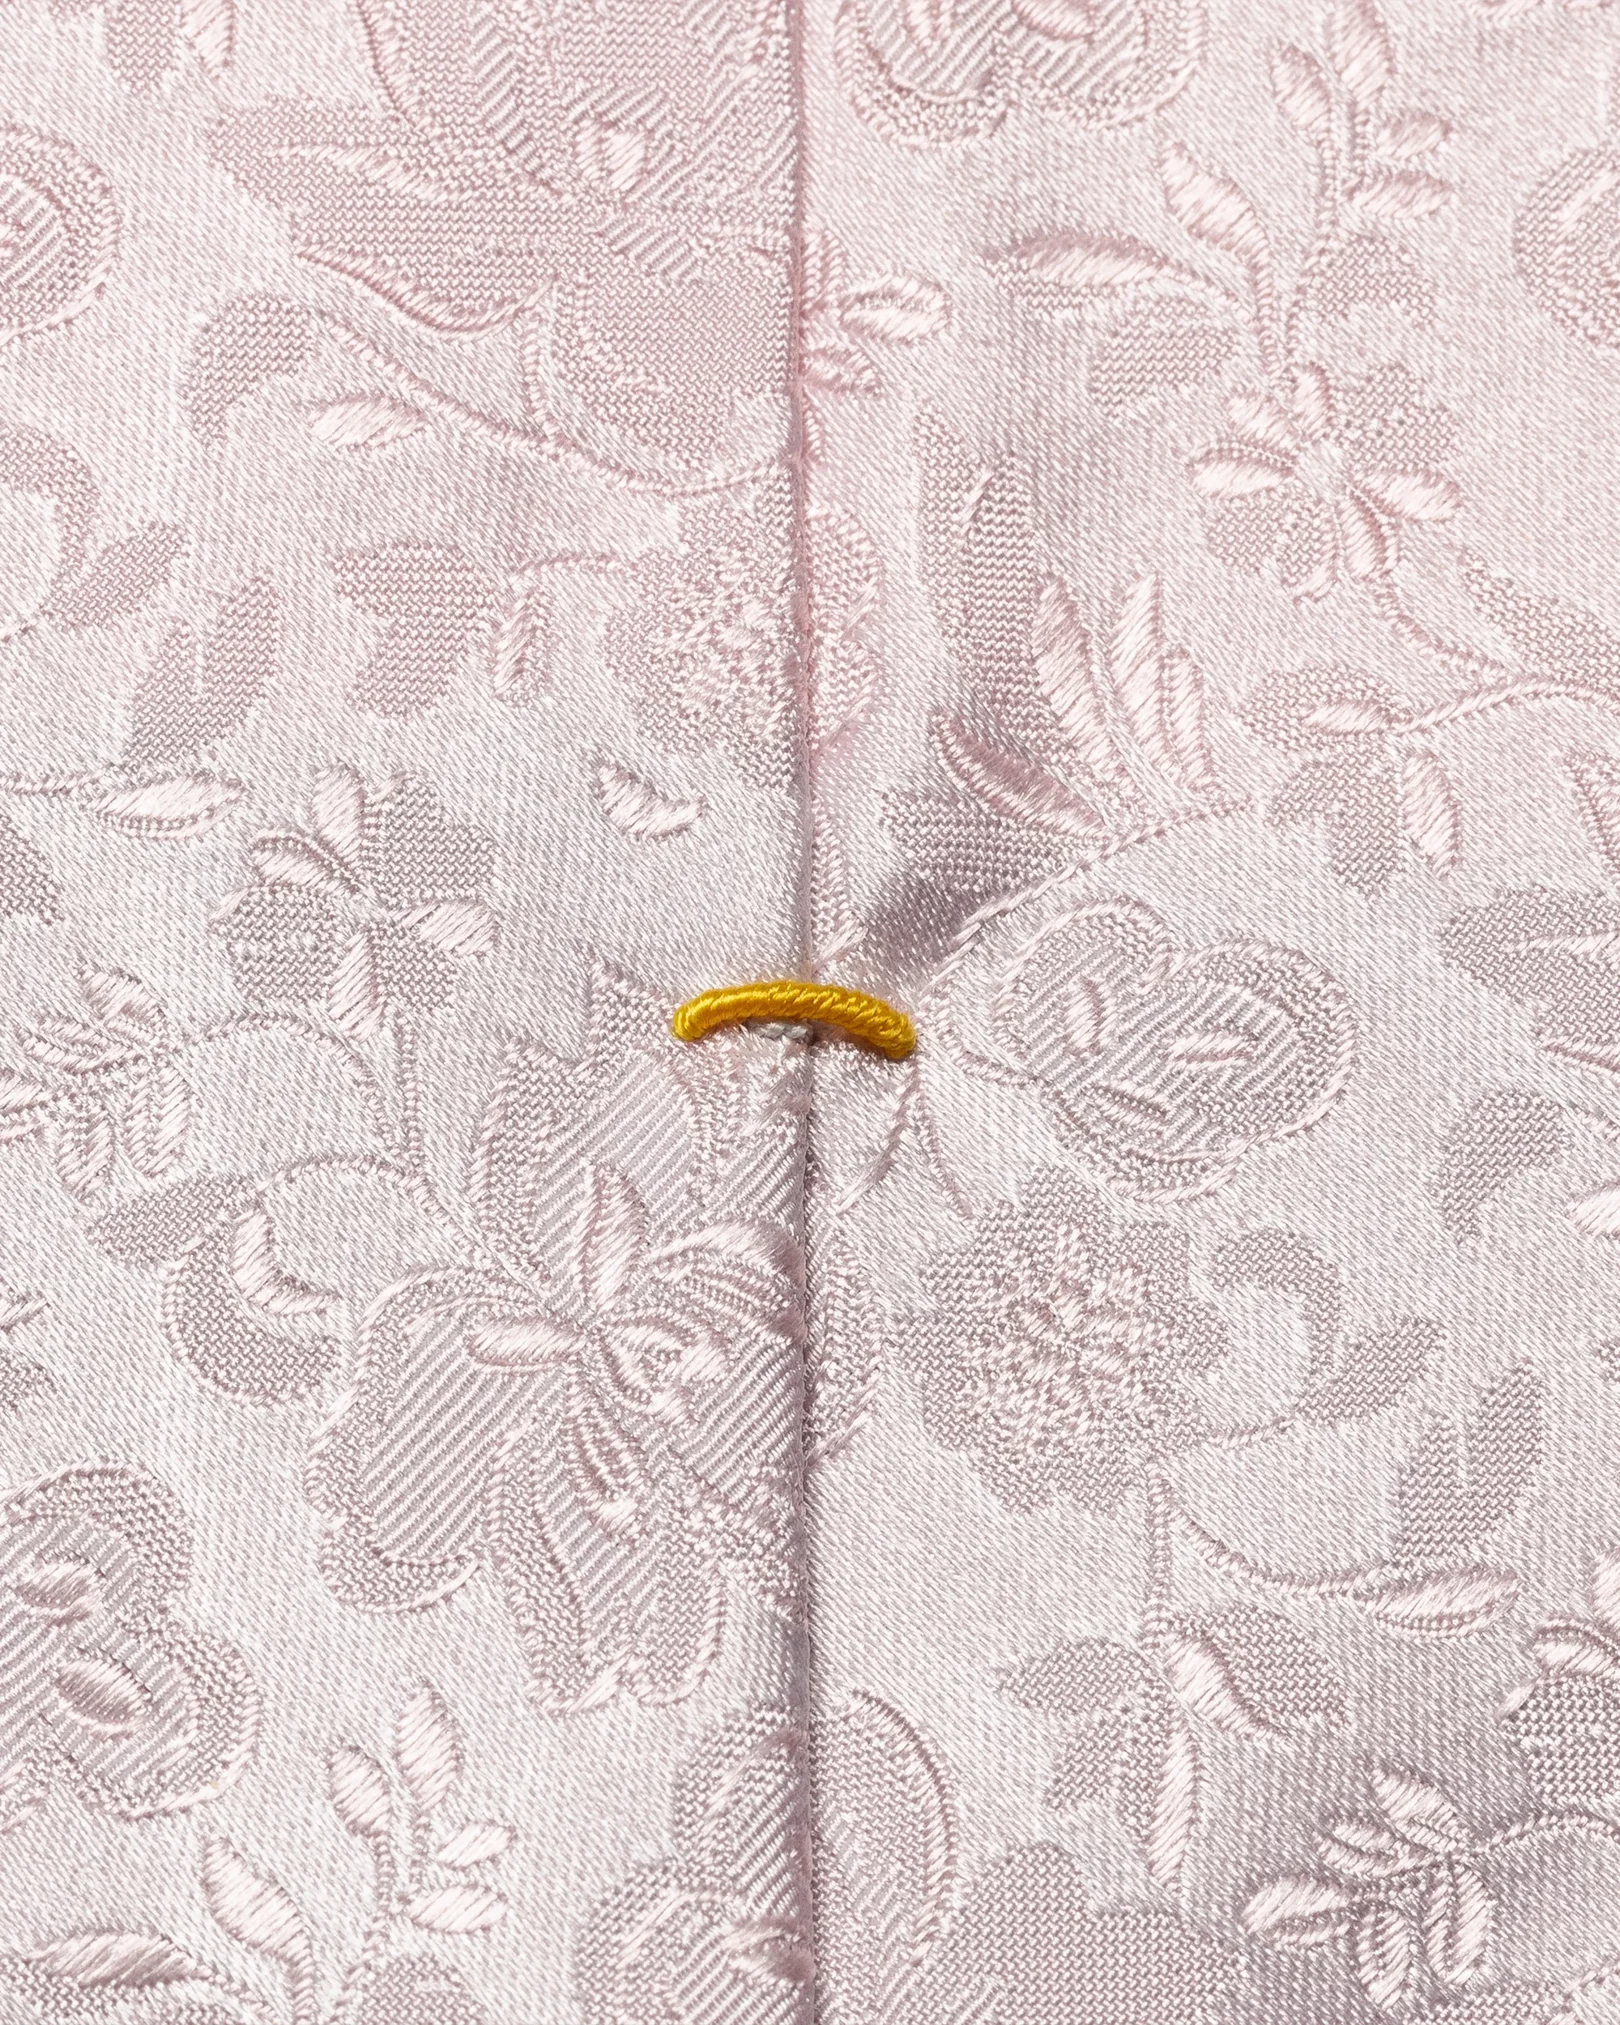 Eton - pink jacquard tie